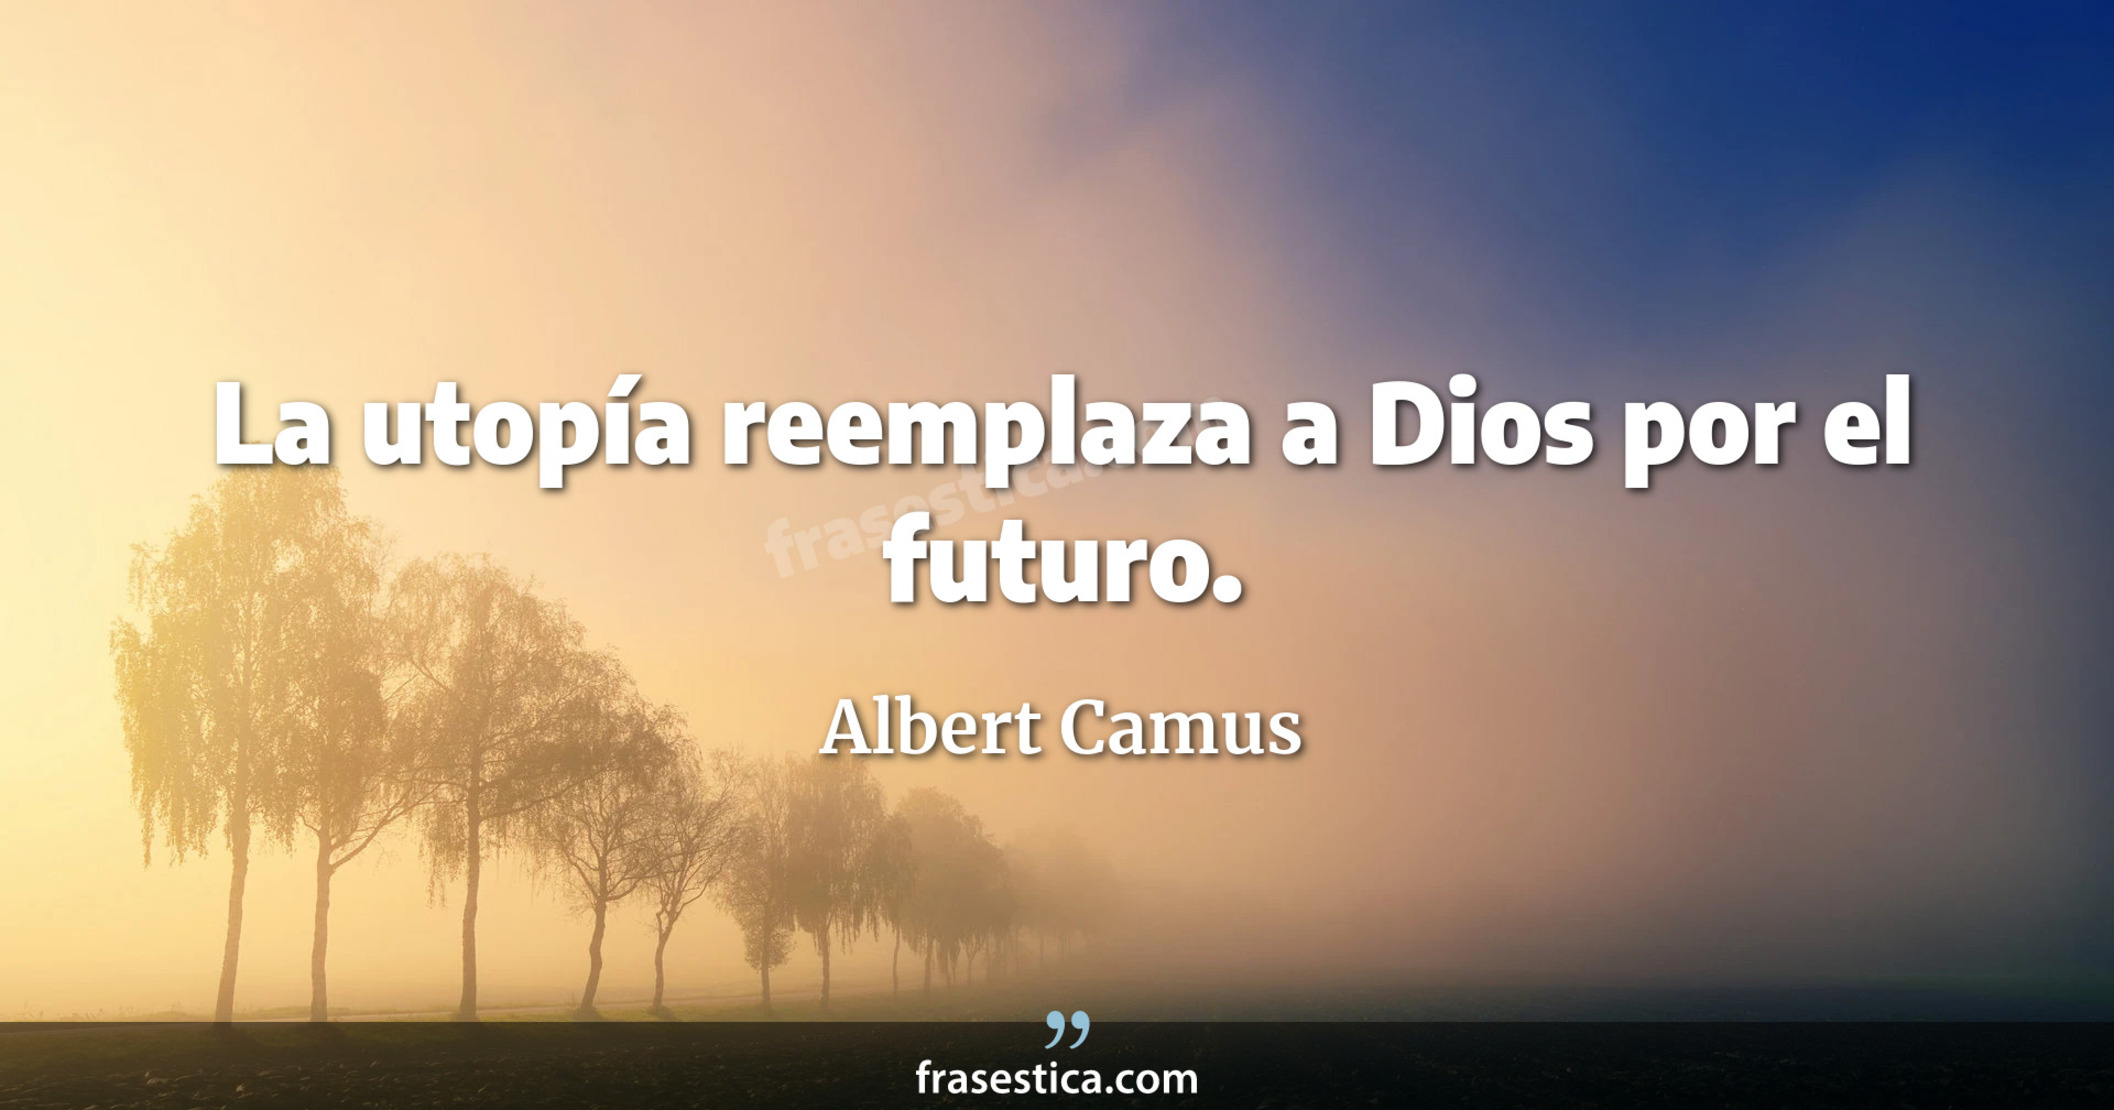 La utopía reemplaza a Dios por el futuro. - Albert Camus